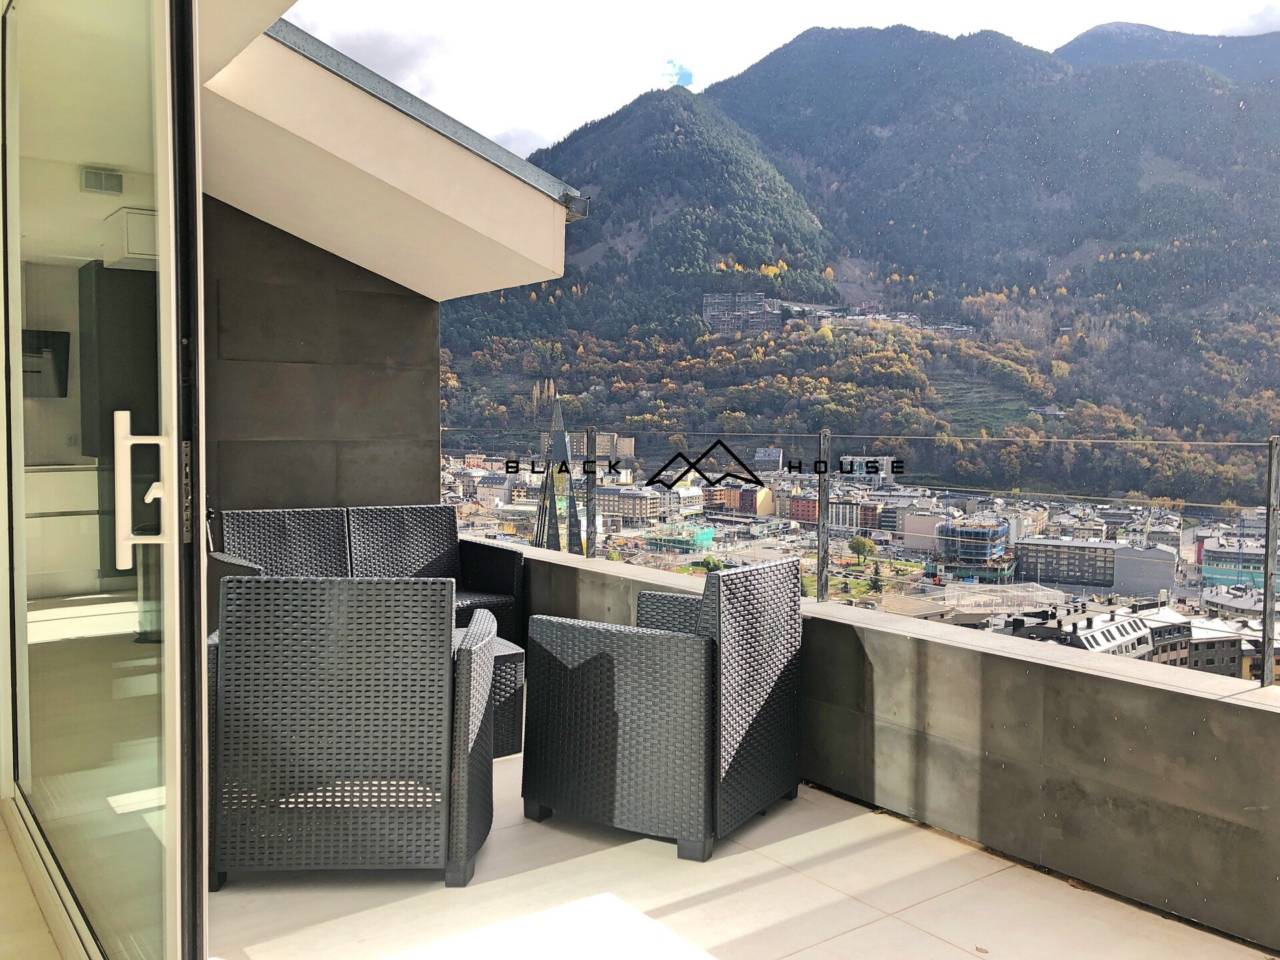 Increible pis per a vendre a Escaldes amb preciosa terrassa amb vistes